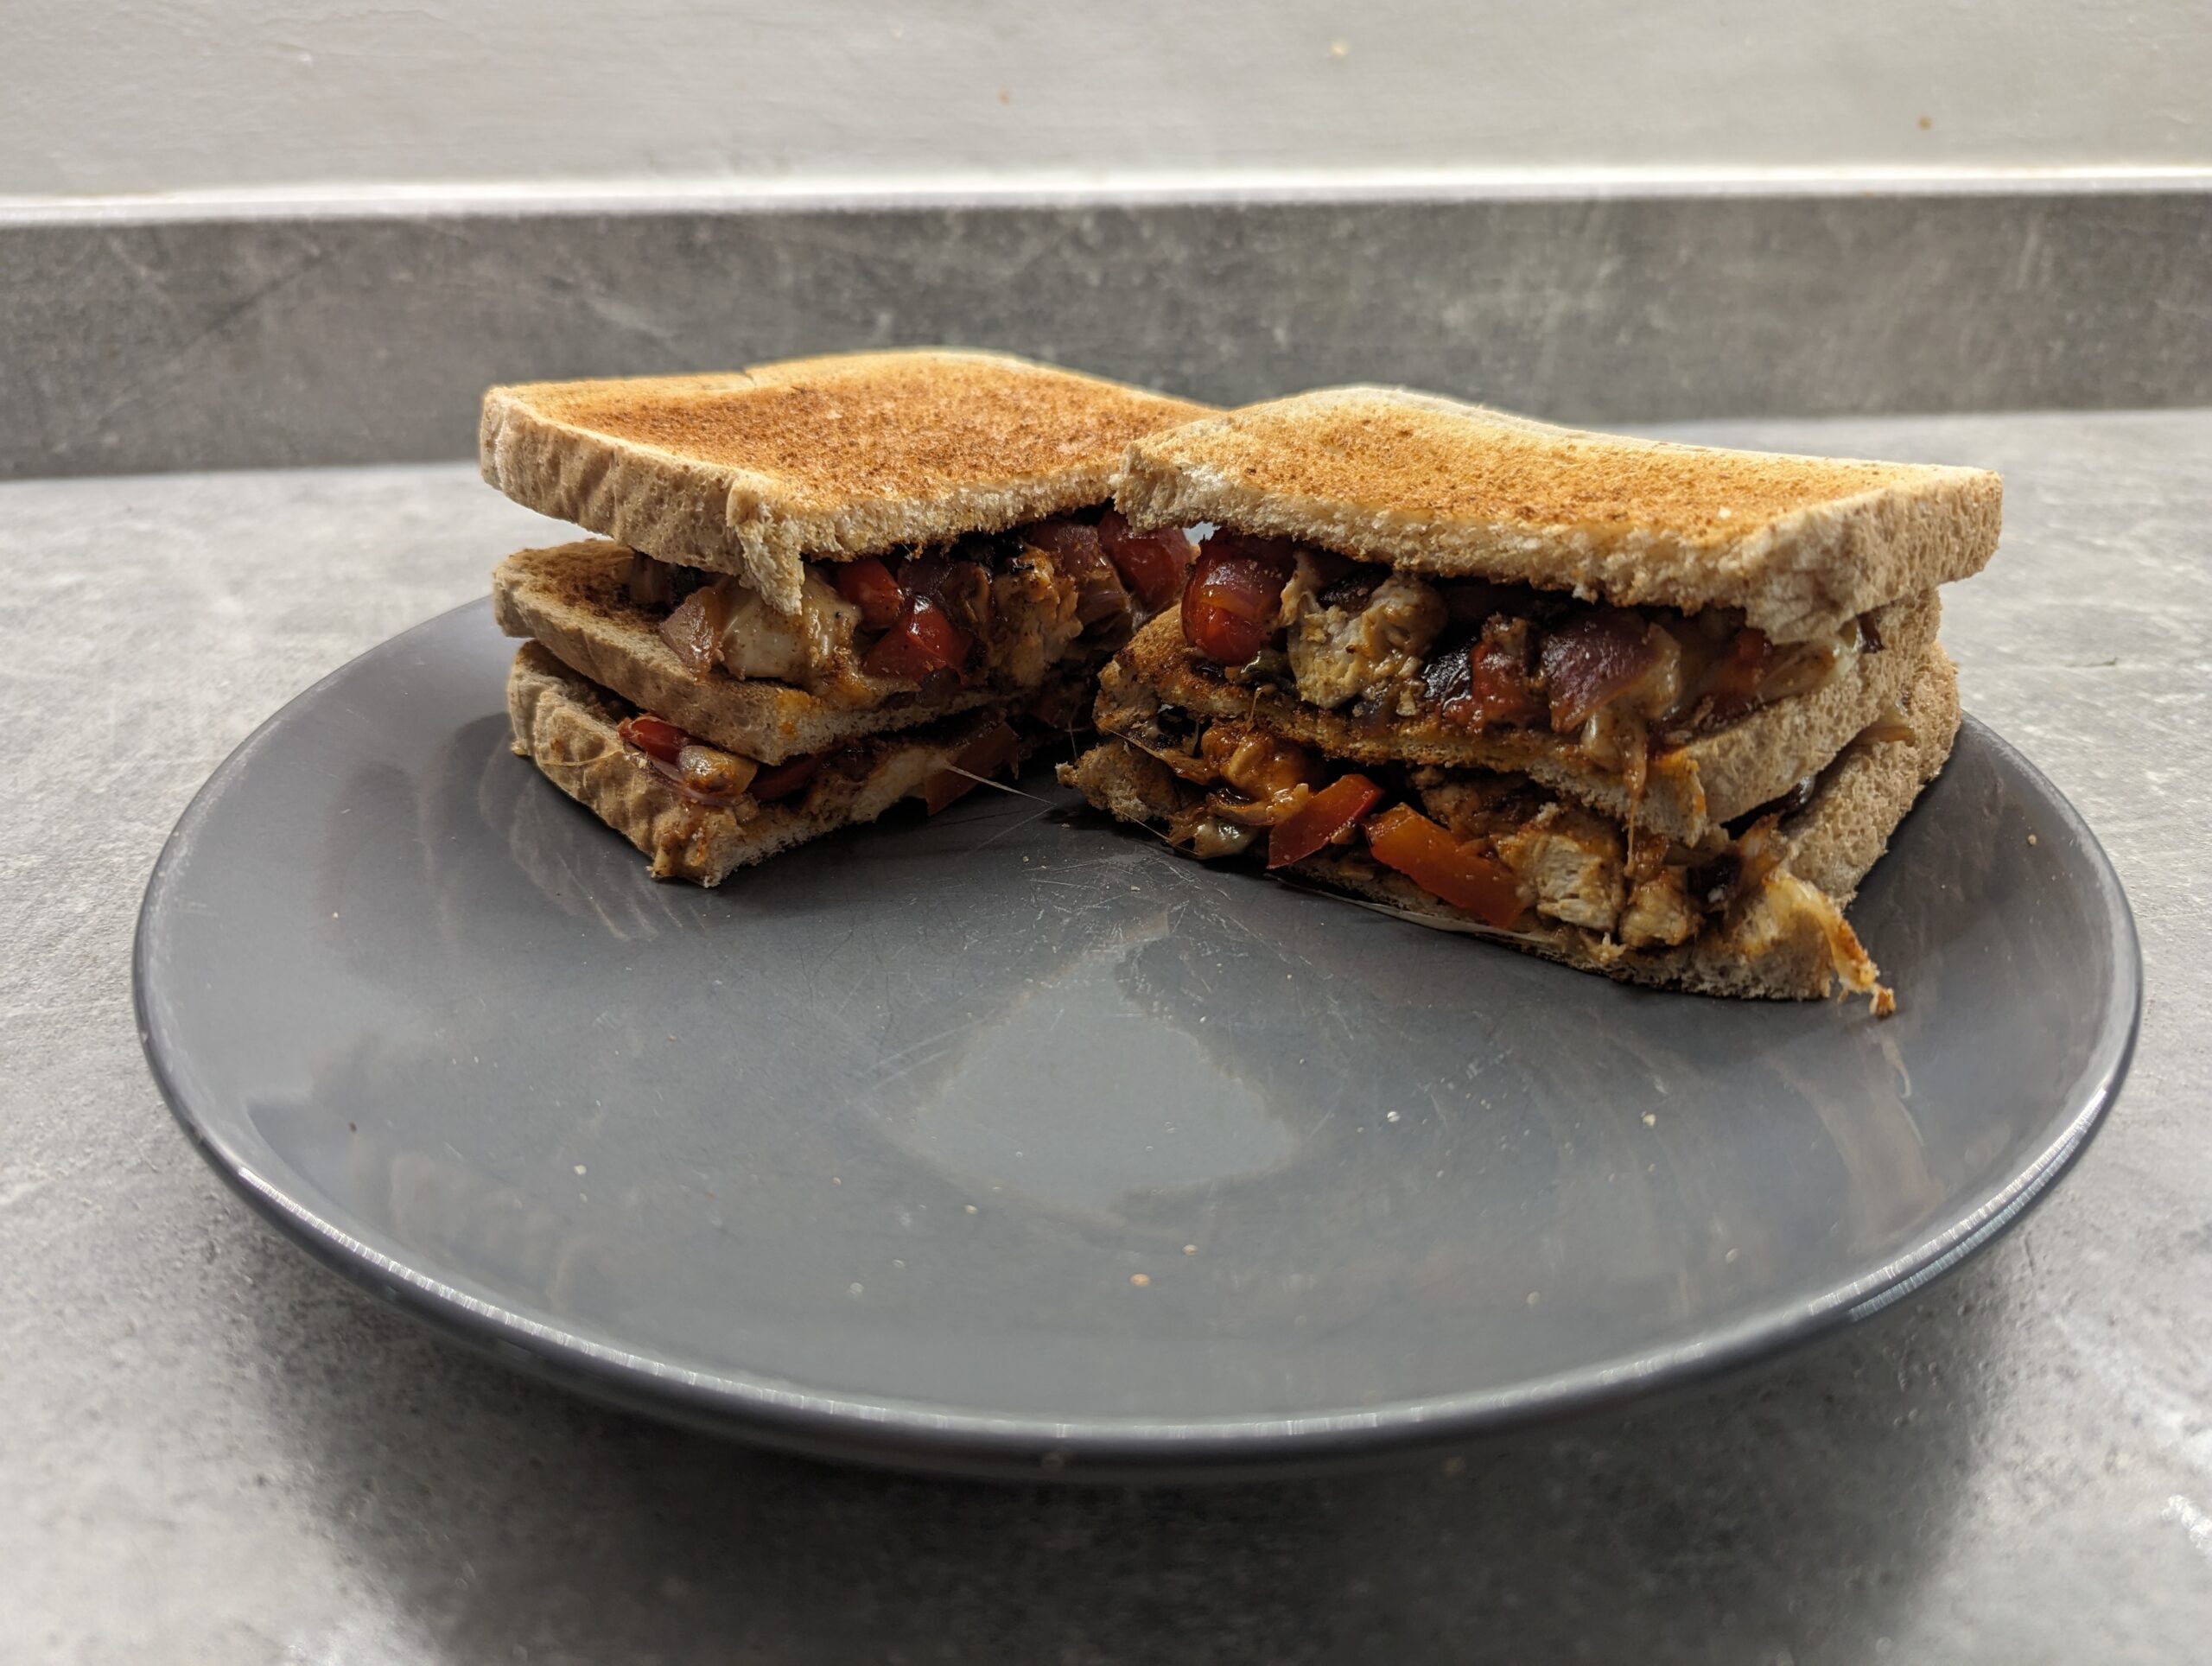 High Protein Lunch: Amazing Chicken Sandwich